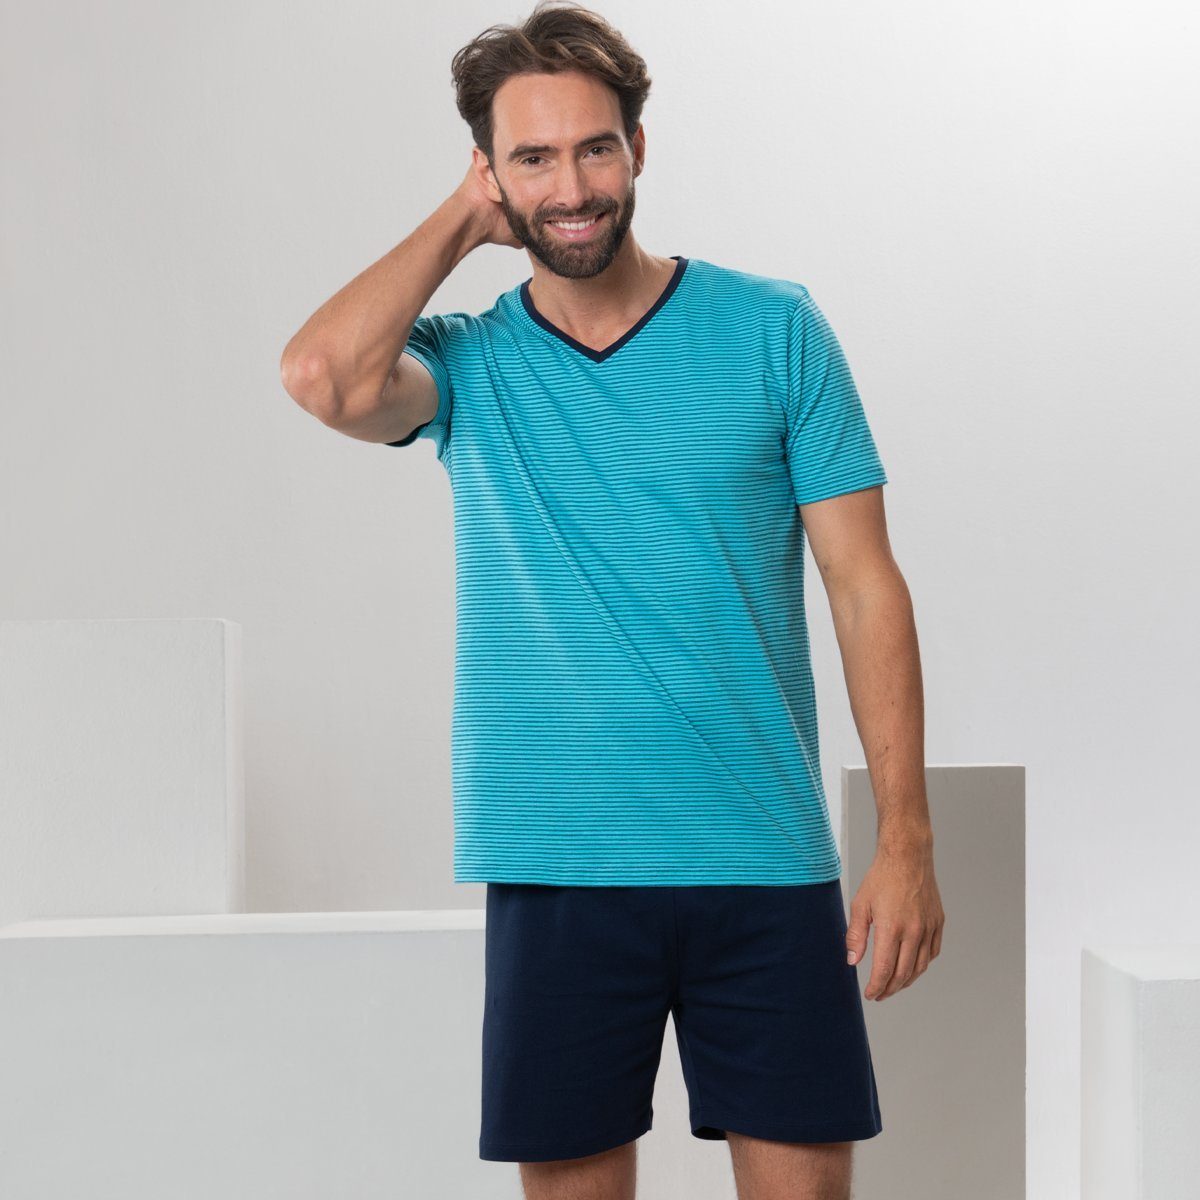 LIVING CRAFTS Schlafanzug CARL Sommerliche Farbtönen abgestimmten Turquoise Leichtigkeit in